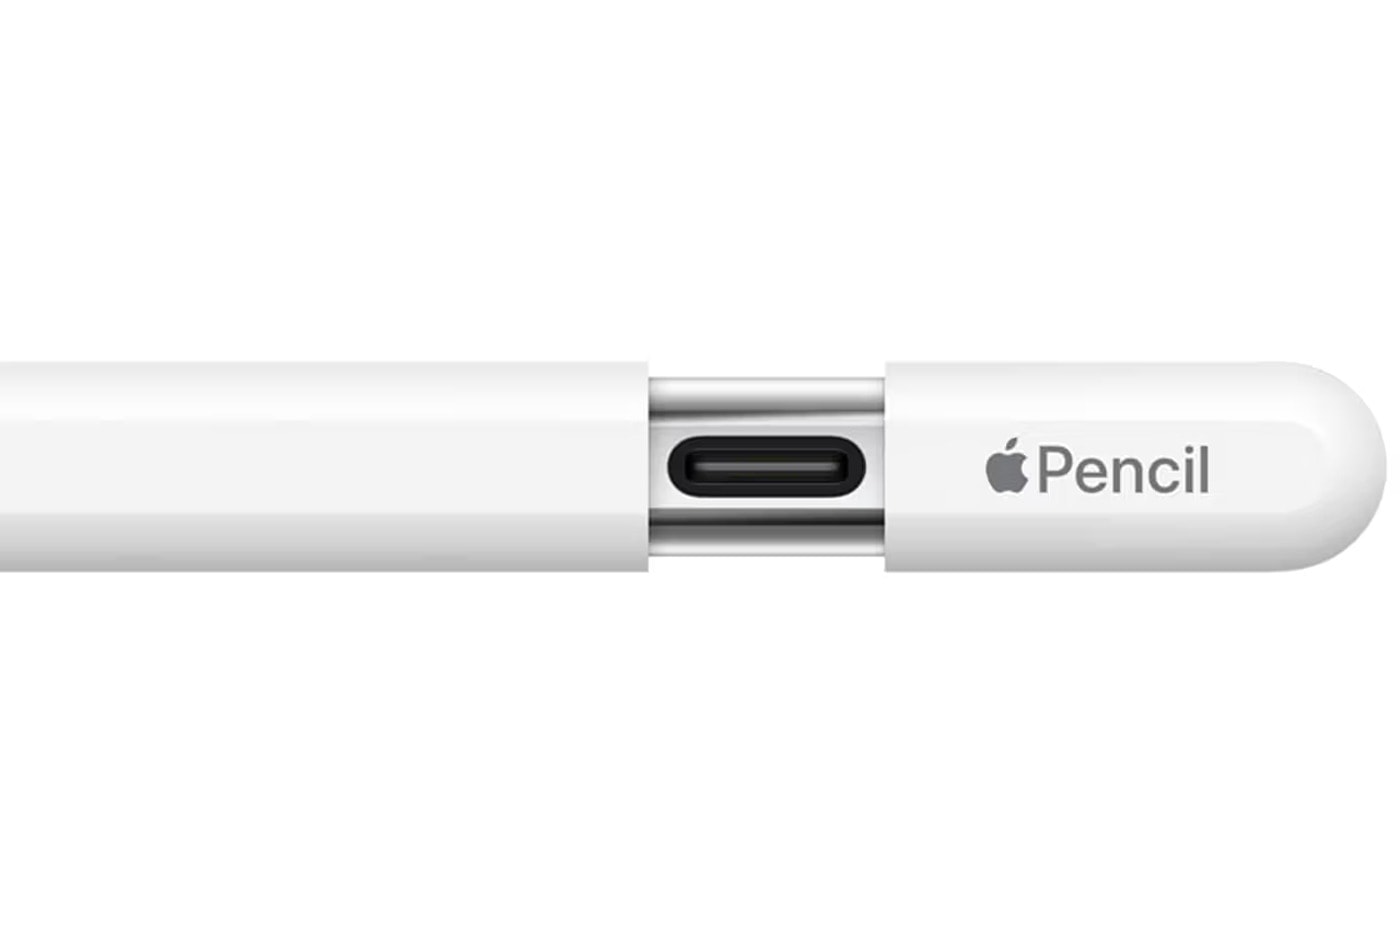 Apple 推出全新入門級 Apple Pencil